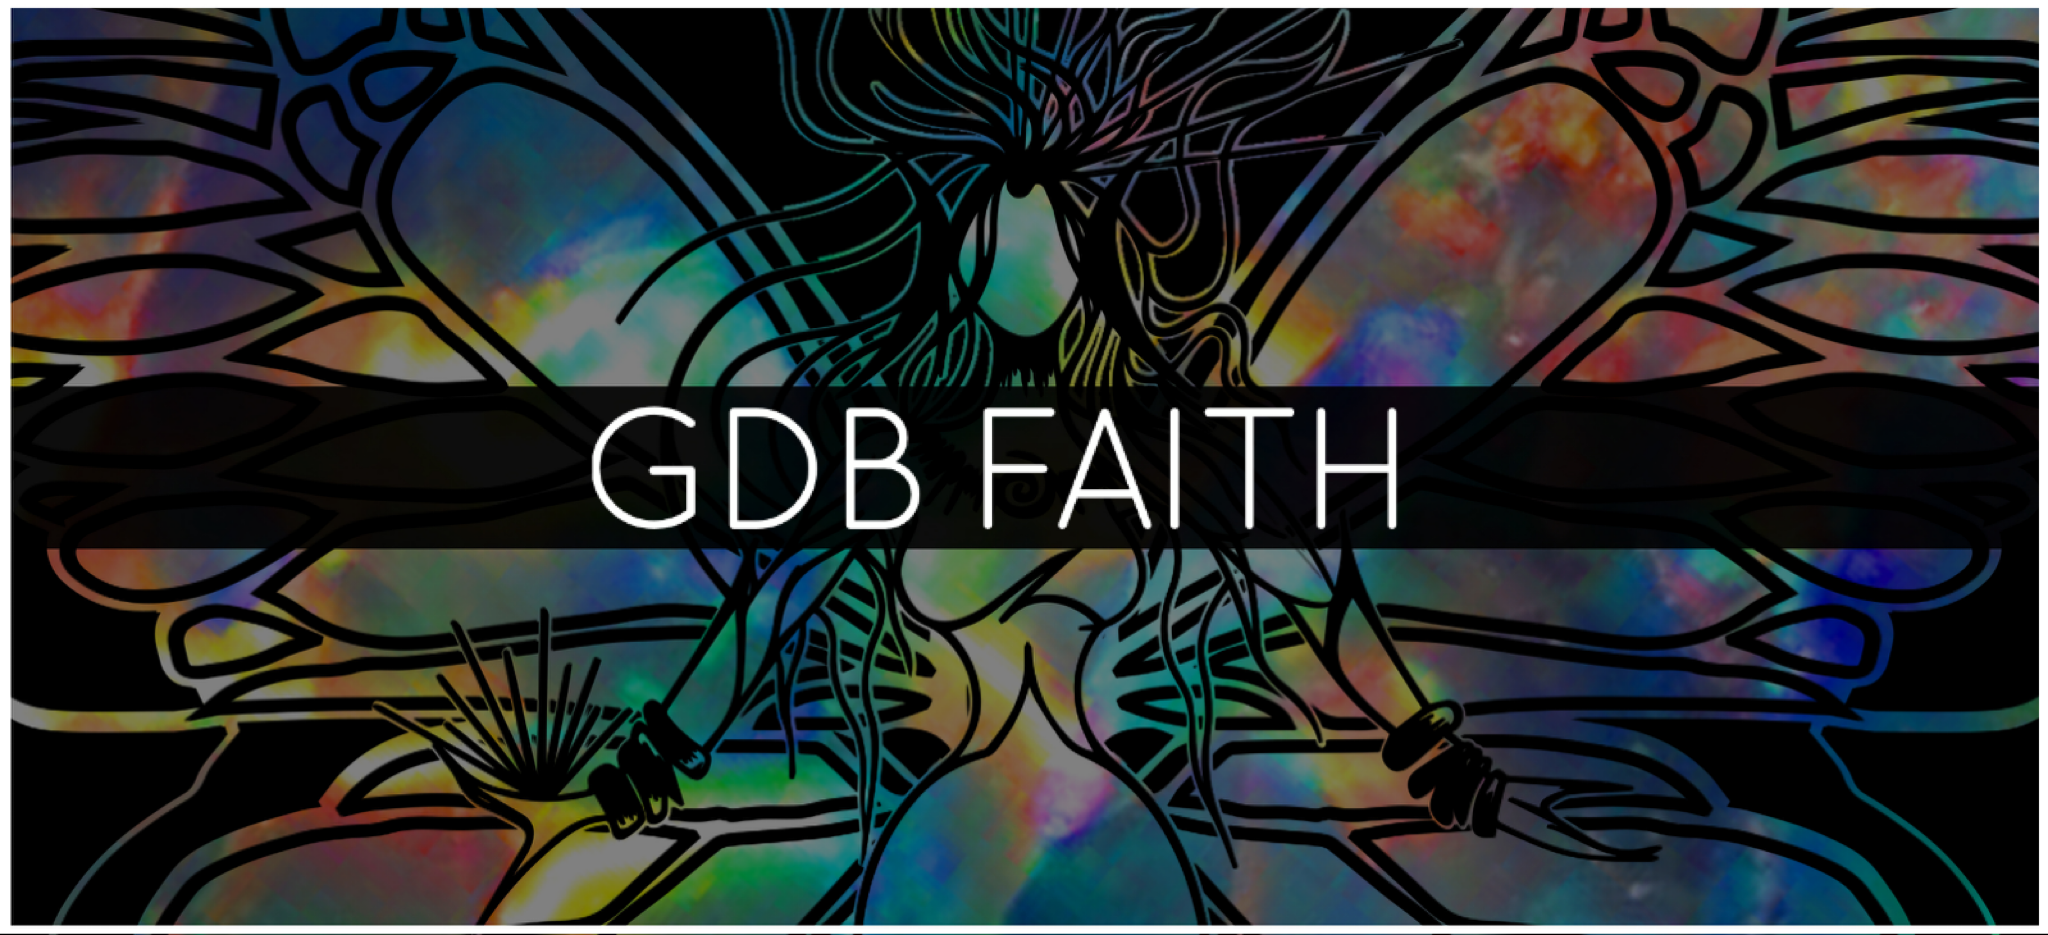 GDB FAITH TALISMAN™